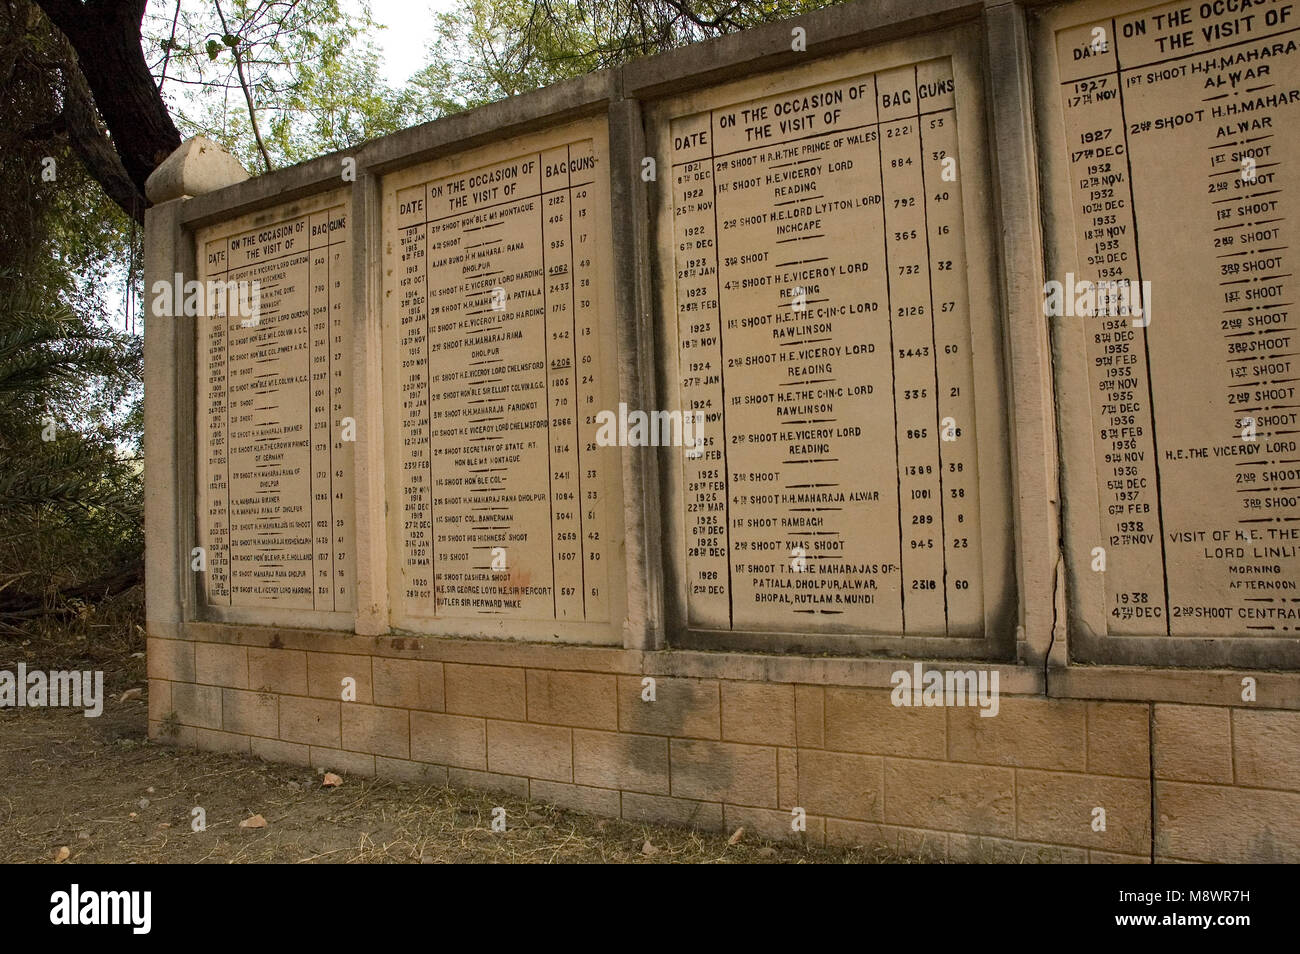 Monuments commémoratifs de la nombre d'oiseaux abattus dans la région de Bharatpur, Inde. Heureusement, ce sont des événements de l'ici. Banque D'Images